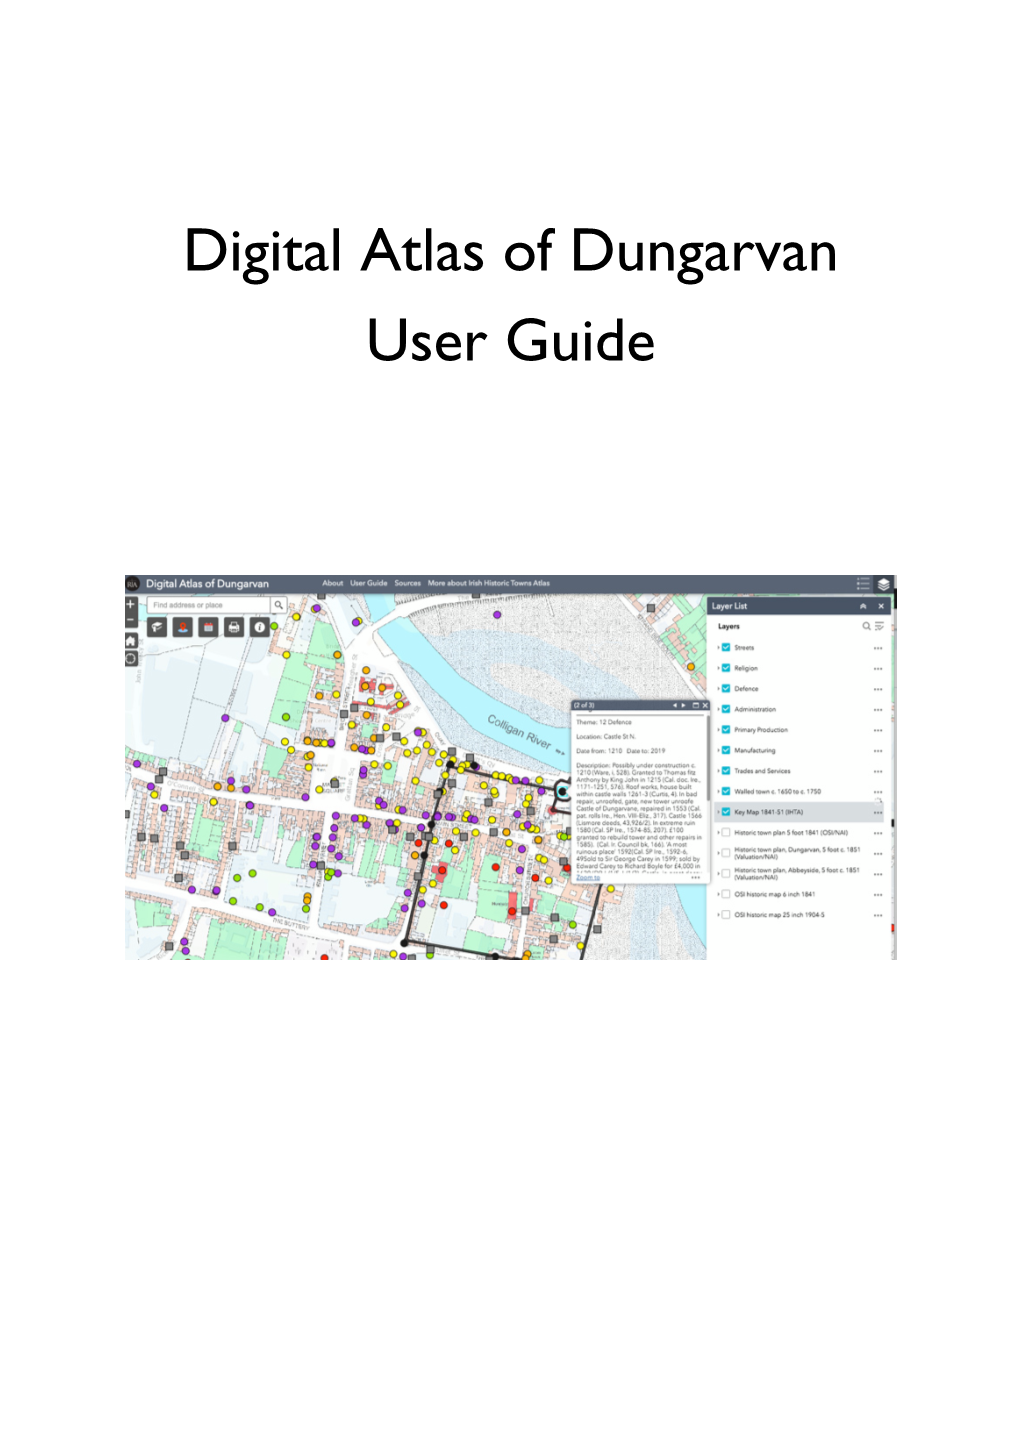 Digital Atlas of Dungarvan User Guide